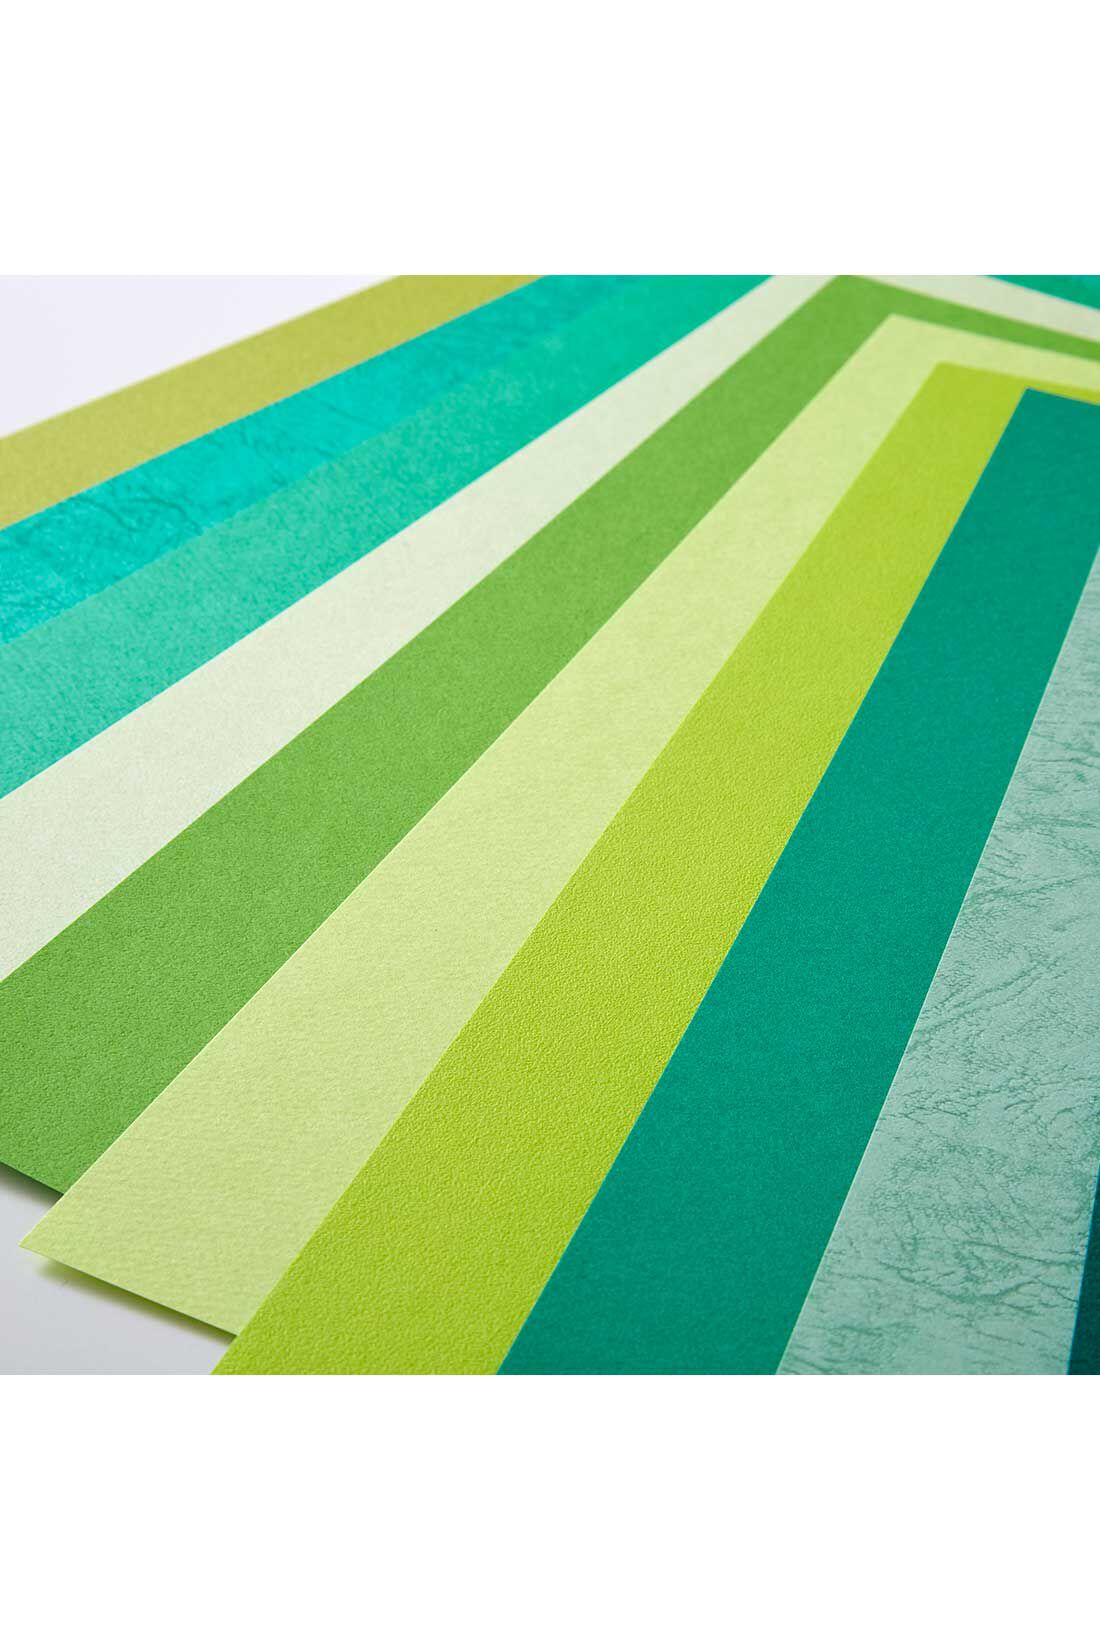 OSYAIRO|OSYAIRO 紙の専門商社竹尾が選ぶ　色を楽しむ紙セットの会〈緑〉|明るい緑や渋めの緑、青っぽい緑に黄色っぽい緑etc. 色の幅が広いのも緑の特徴です。